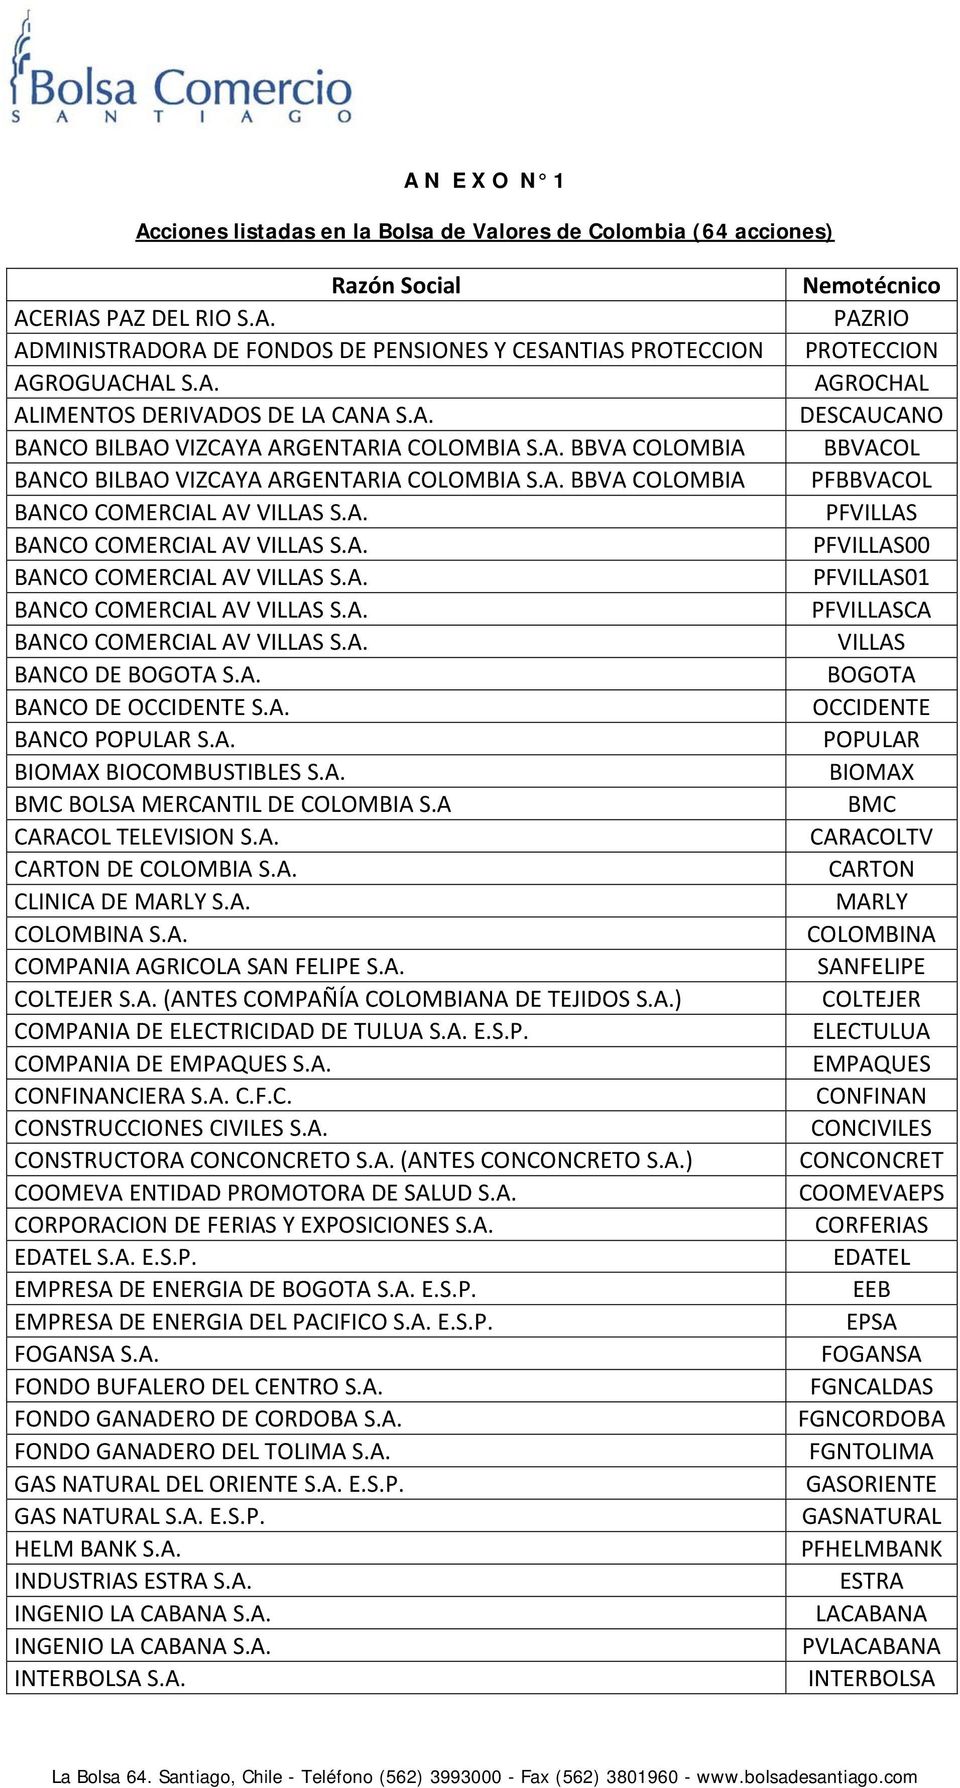 A. BMC BOLSA MERCANTIL DE COLOMBIA S.A CARACOL TELEVISION S.A. CARTON DE COLOMBIA S.A. CLINICA DE MARLY S.A. COLOMBINA S.A. COMPANIA AGRICOLA SAN FELIPE S.A. COLTEJER S.A. (ANTES COMPAÑÍA COLOMBIANA DE TEJIDOS S.